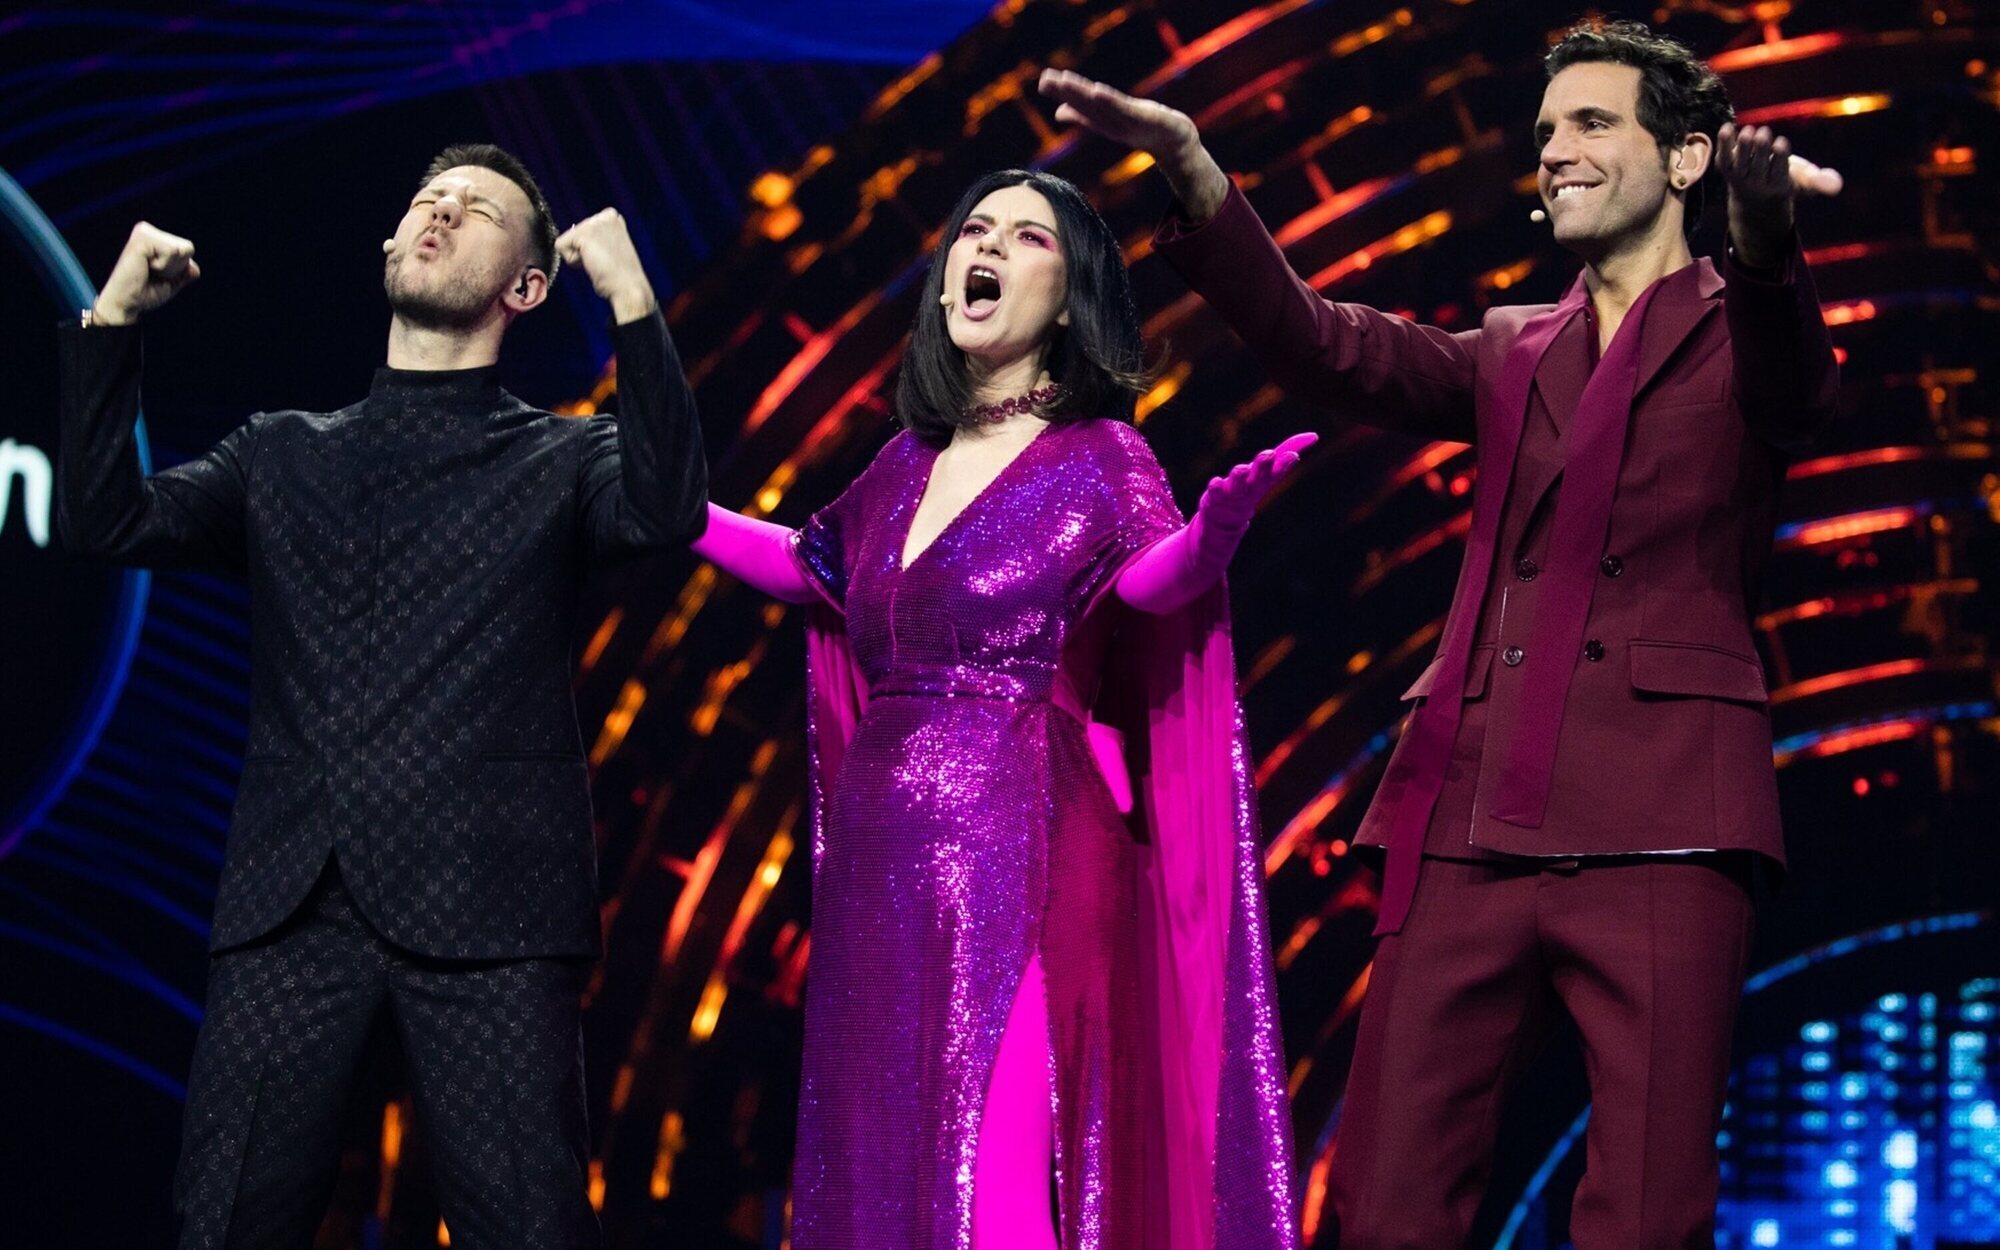 Eurovisión 2022 (9,2%) debuta discreto en La 1 con la Semifinal 1 mientras 'Entrevías' (16,2%) lidera